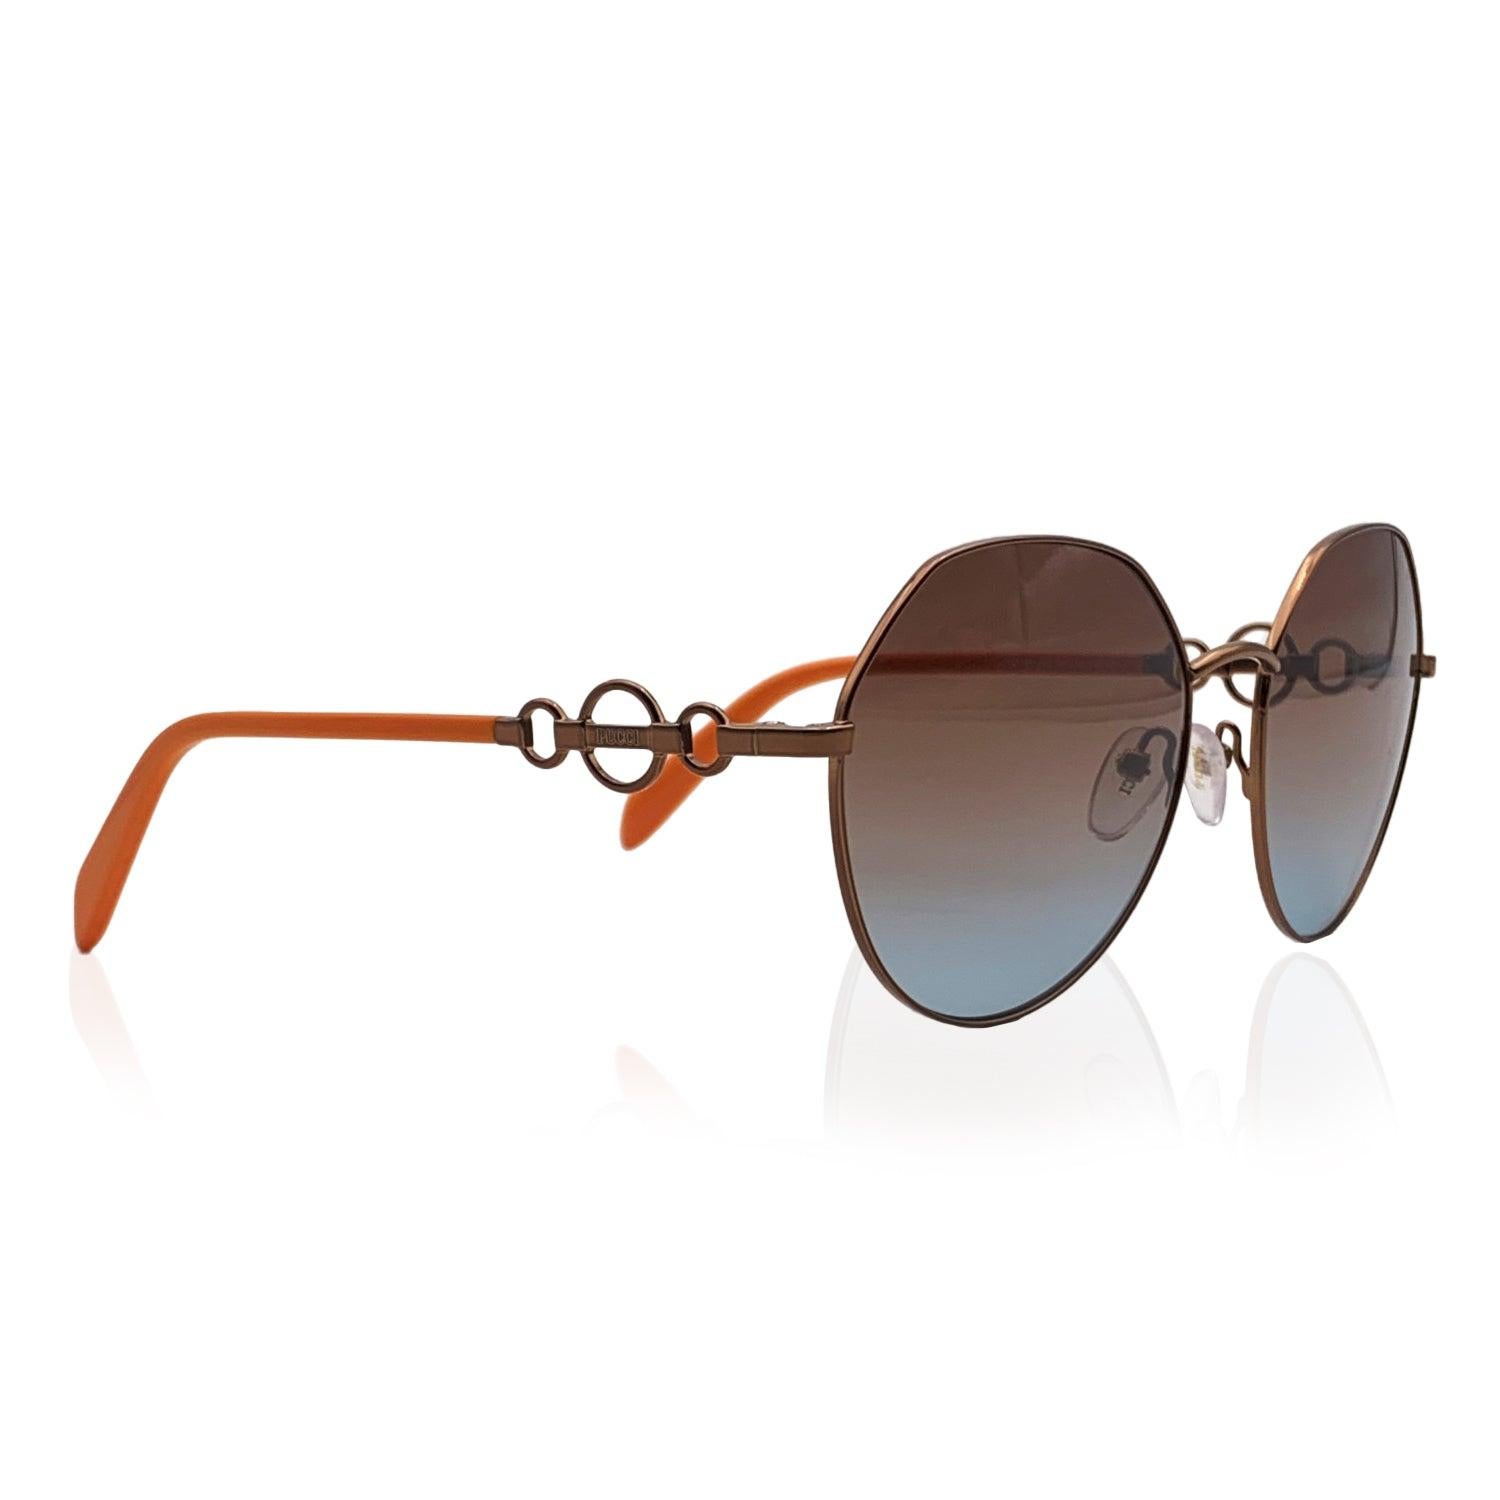 Wunderschöne Damen-Sonnenbrille entworfen von Emilio Pucci, mod. EP 0150 - 36 F. Abgerundeter Bronze-Metallrahmen mit orangefarbenen Bügeln. Hochwertige braune Original-Gläser mit Farbverlauf, 100% UV-Schutz. Importiert Details MATERIAL: Metall